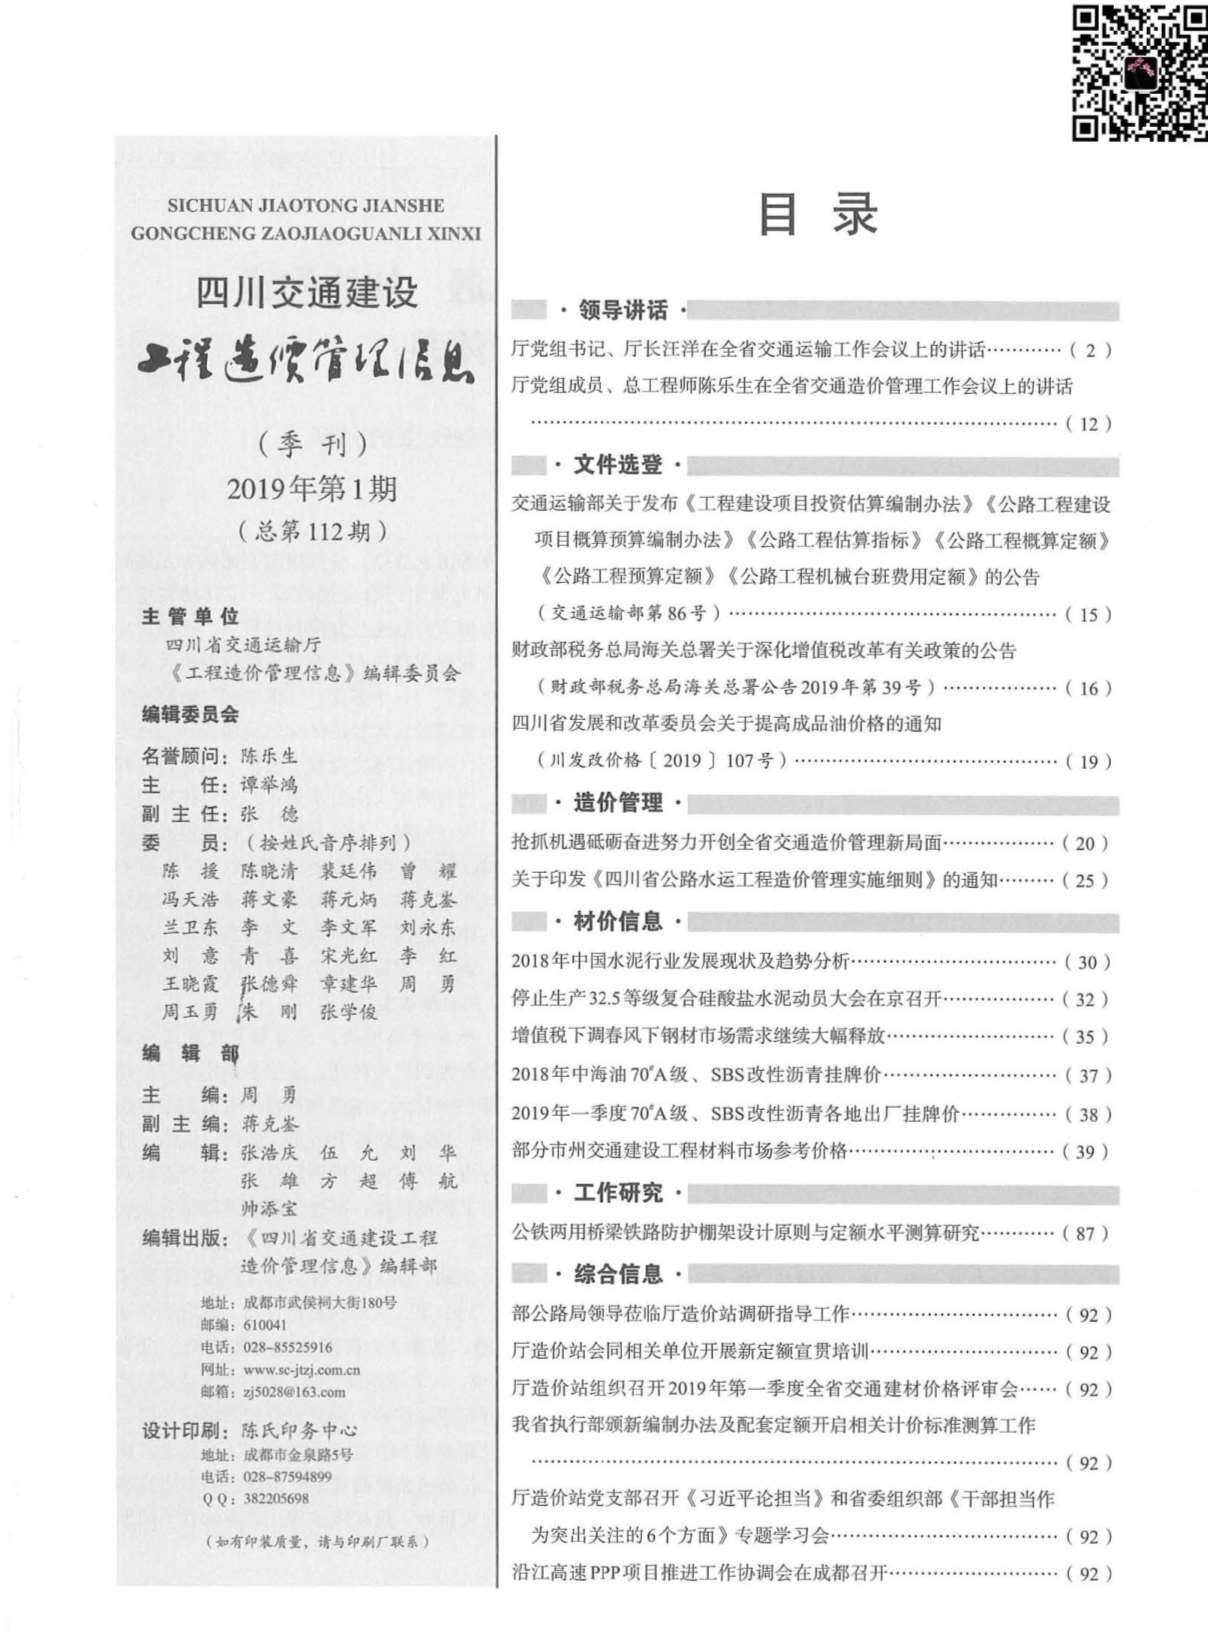 2019年1期四川省交通交通工程造价信息期刊